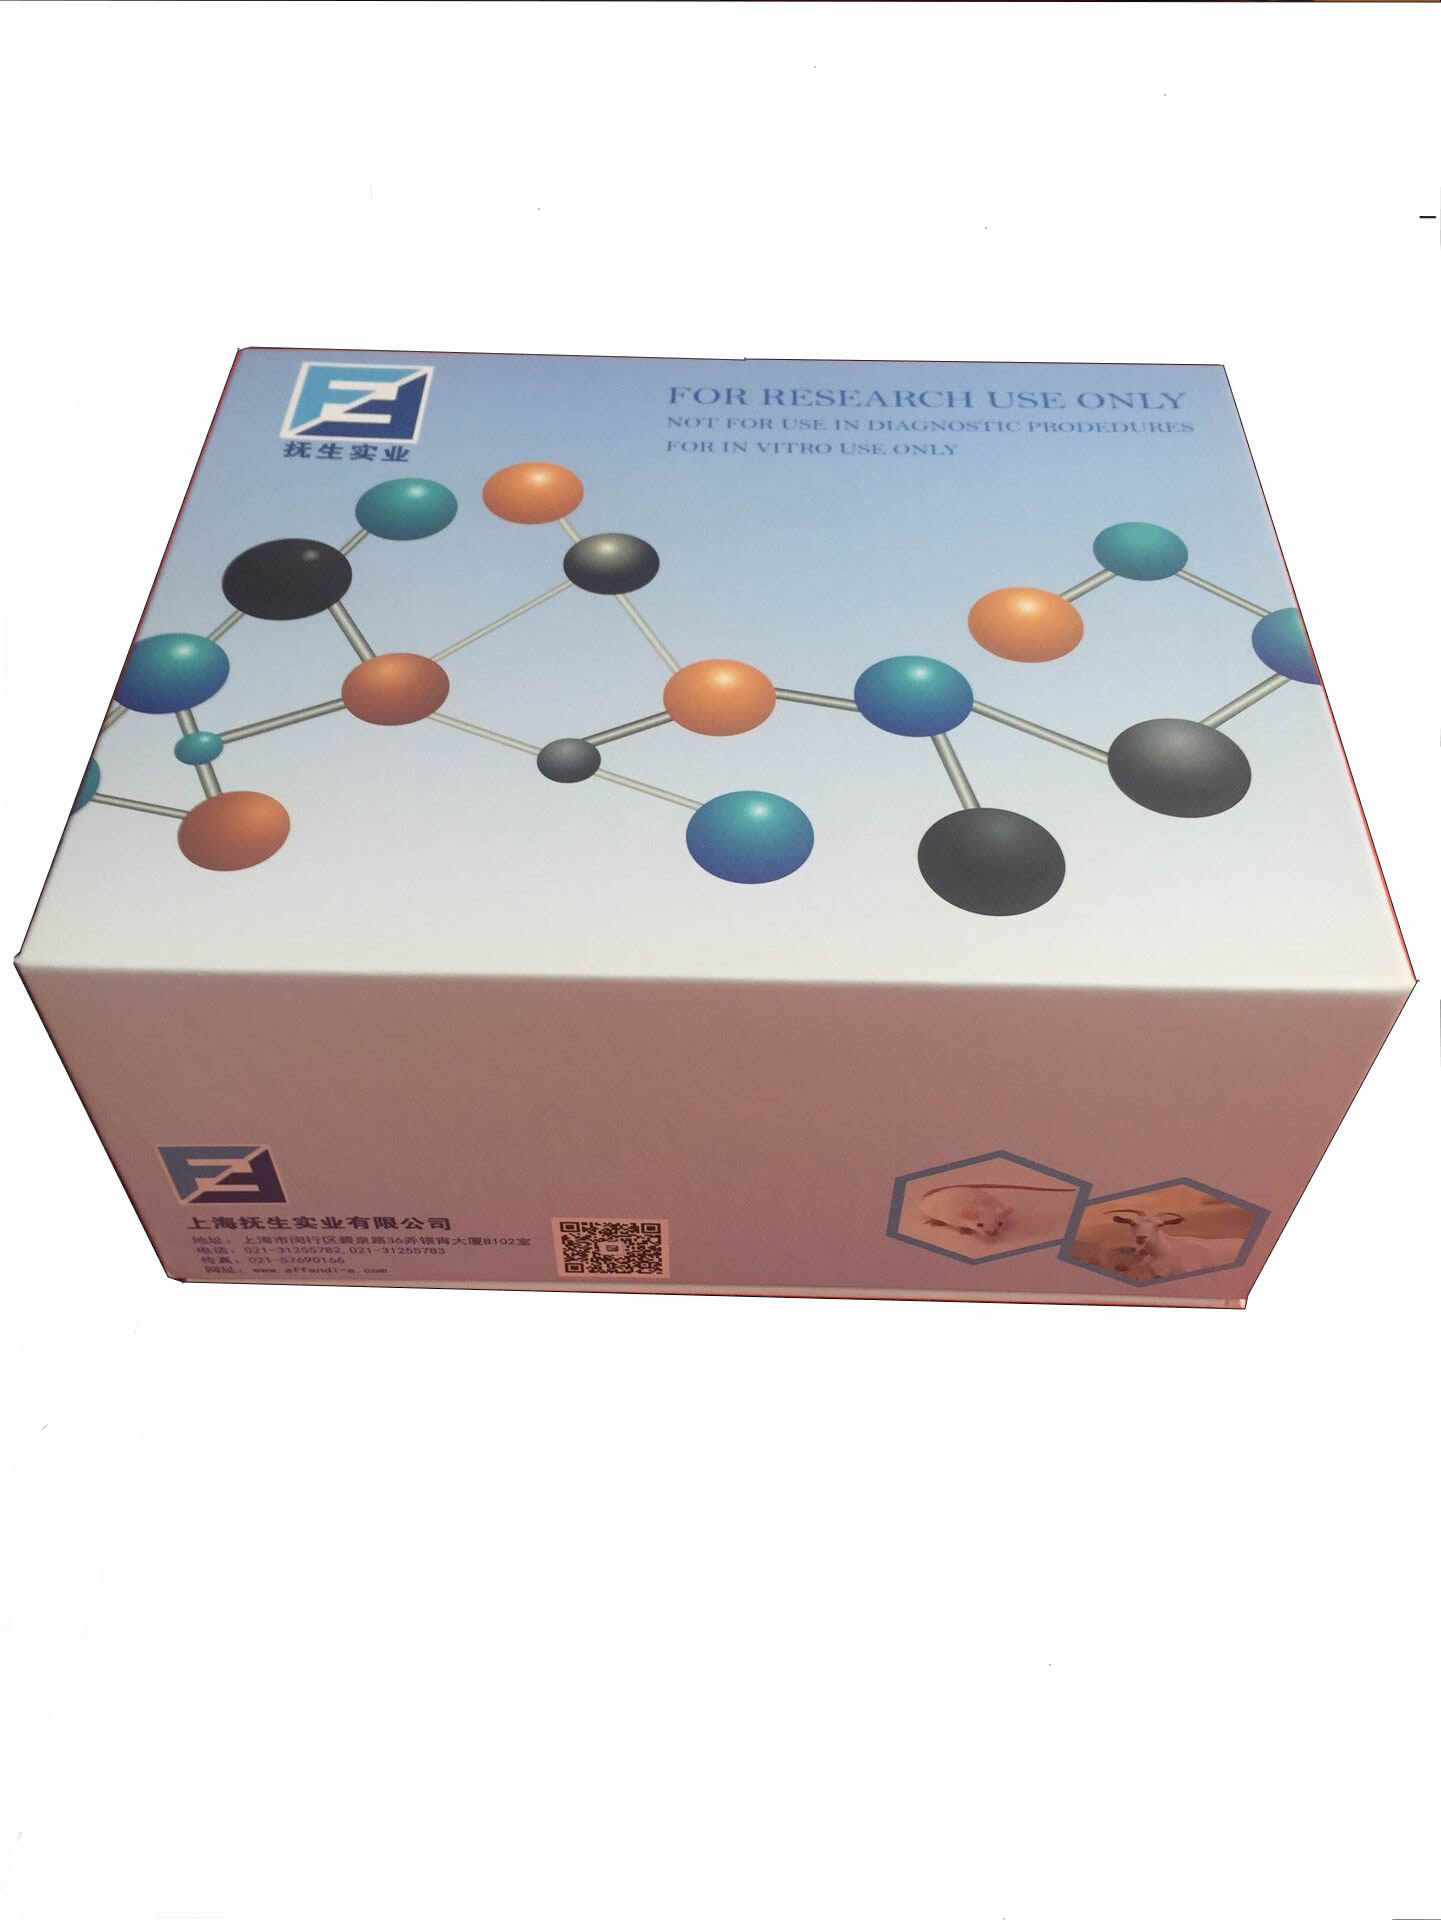 FOR Patatin-like phospholipase domain-containing protein 2 ELISA Kit